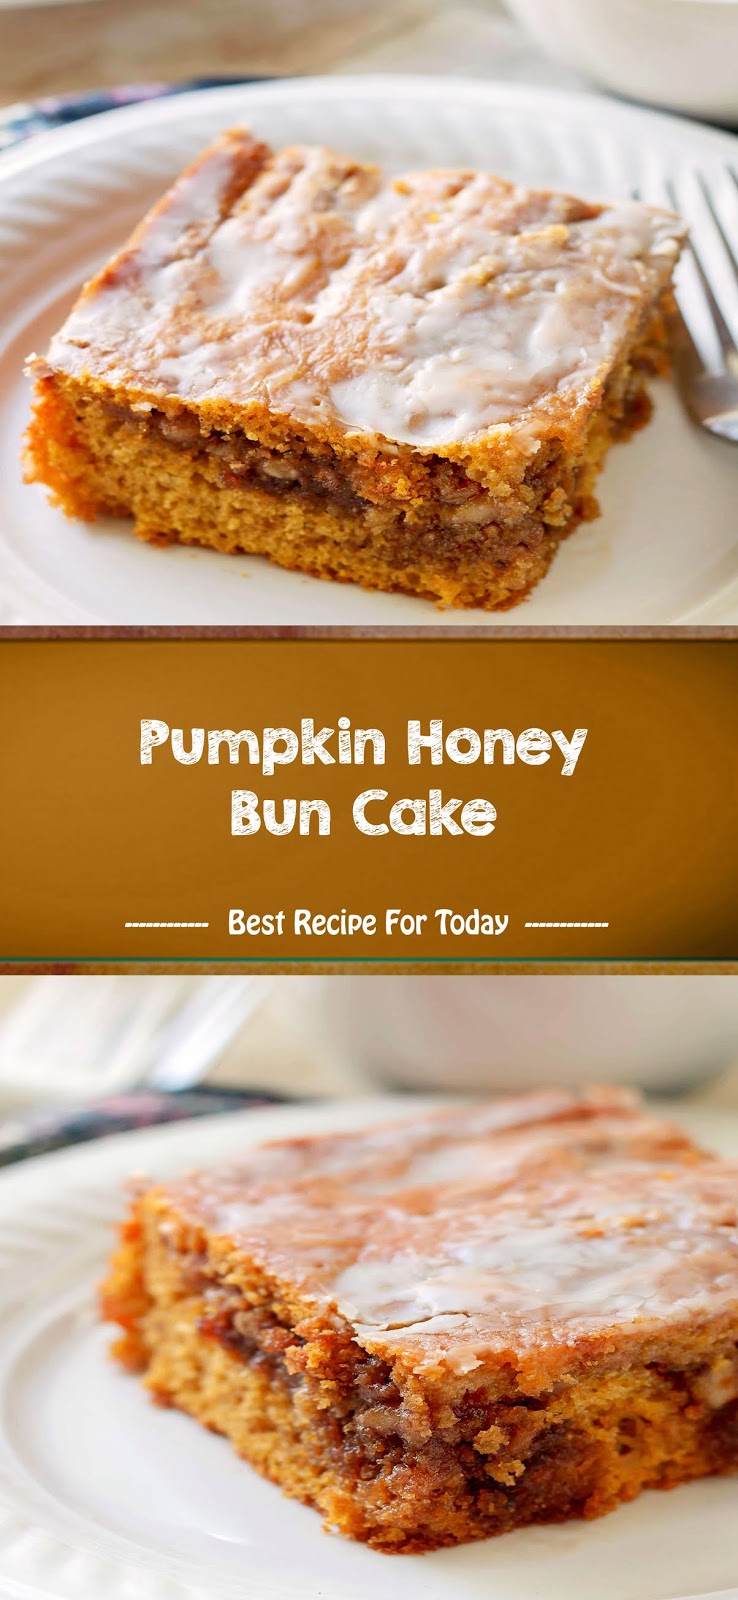 thepopularrecipe4: Pumpkin Honey Bun Cake